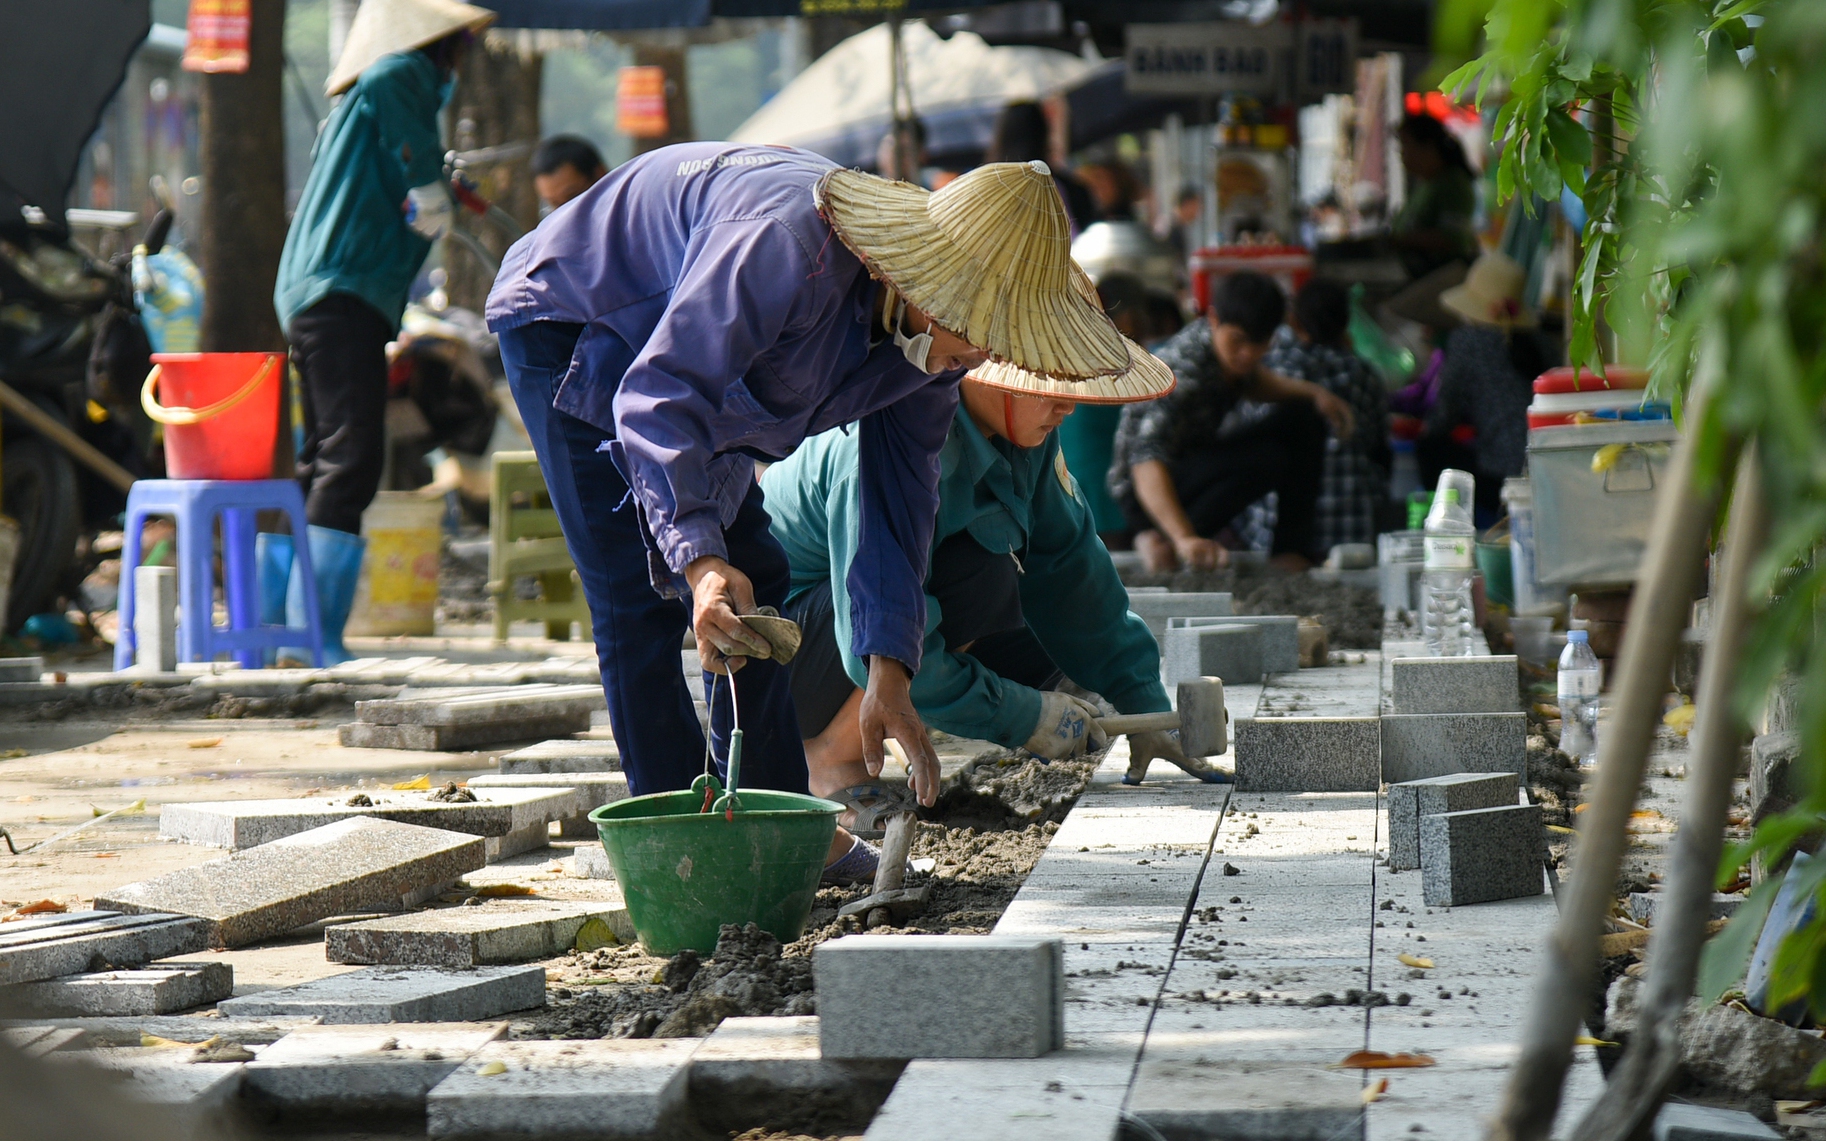 Đá lát vỉa hè có tuổi thọ 70 năm ở Hà Nội "nát tươm" sau thời gian ngắn sử dụng